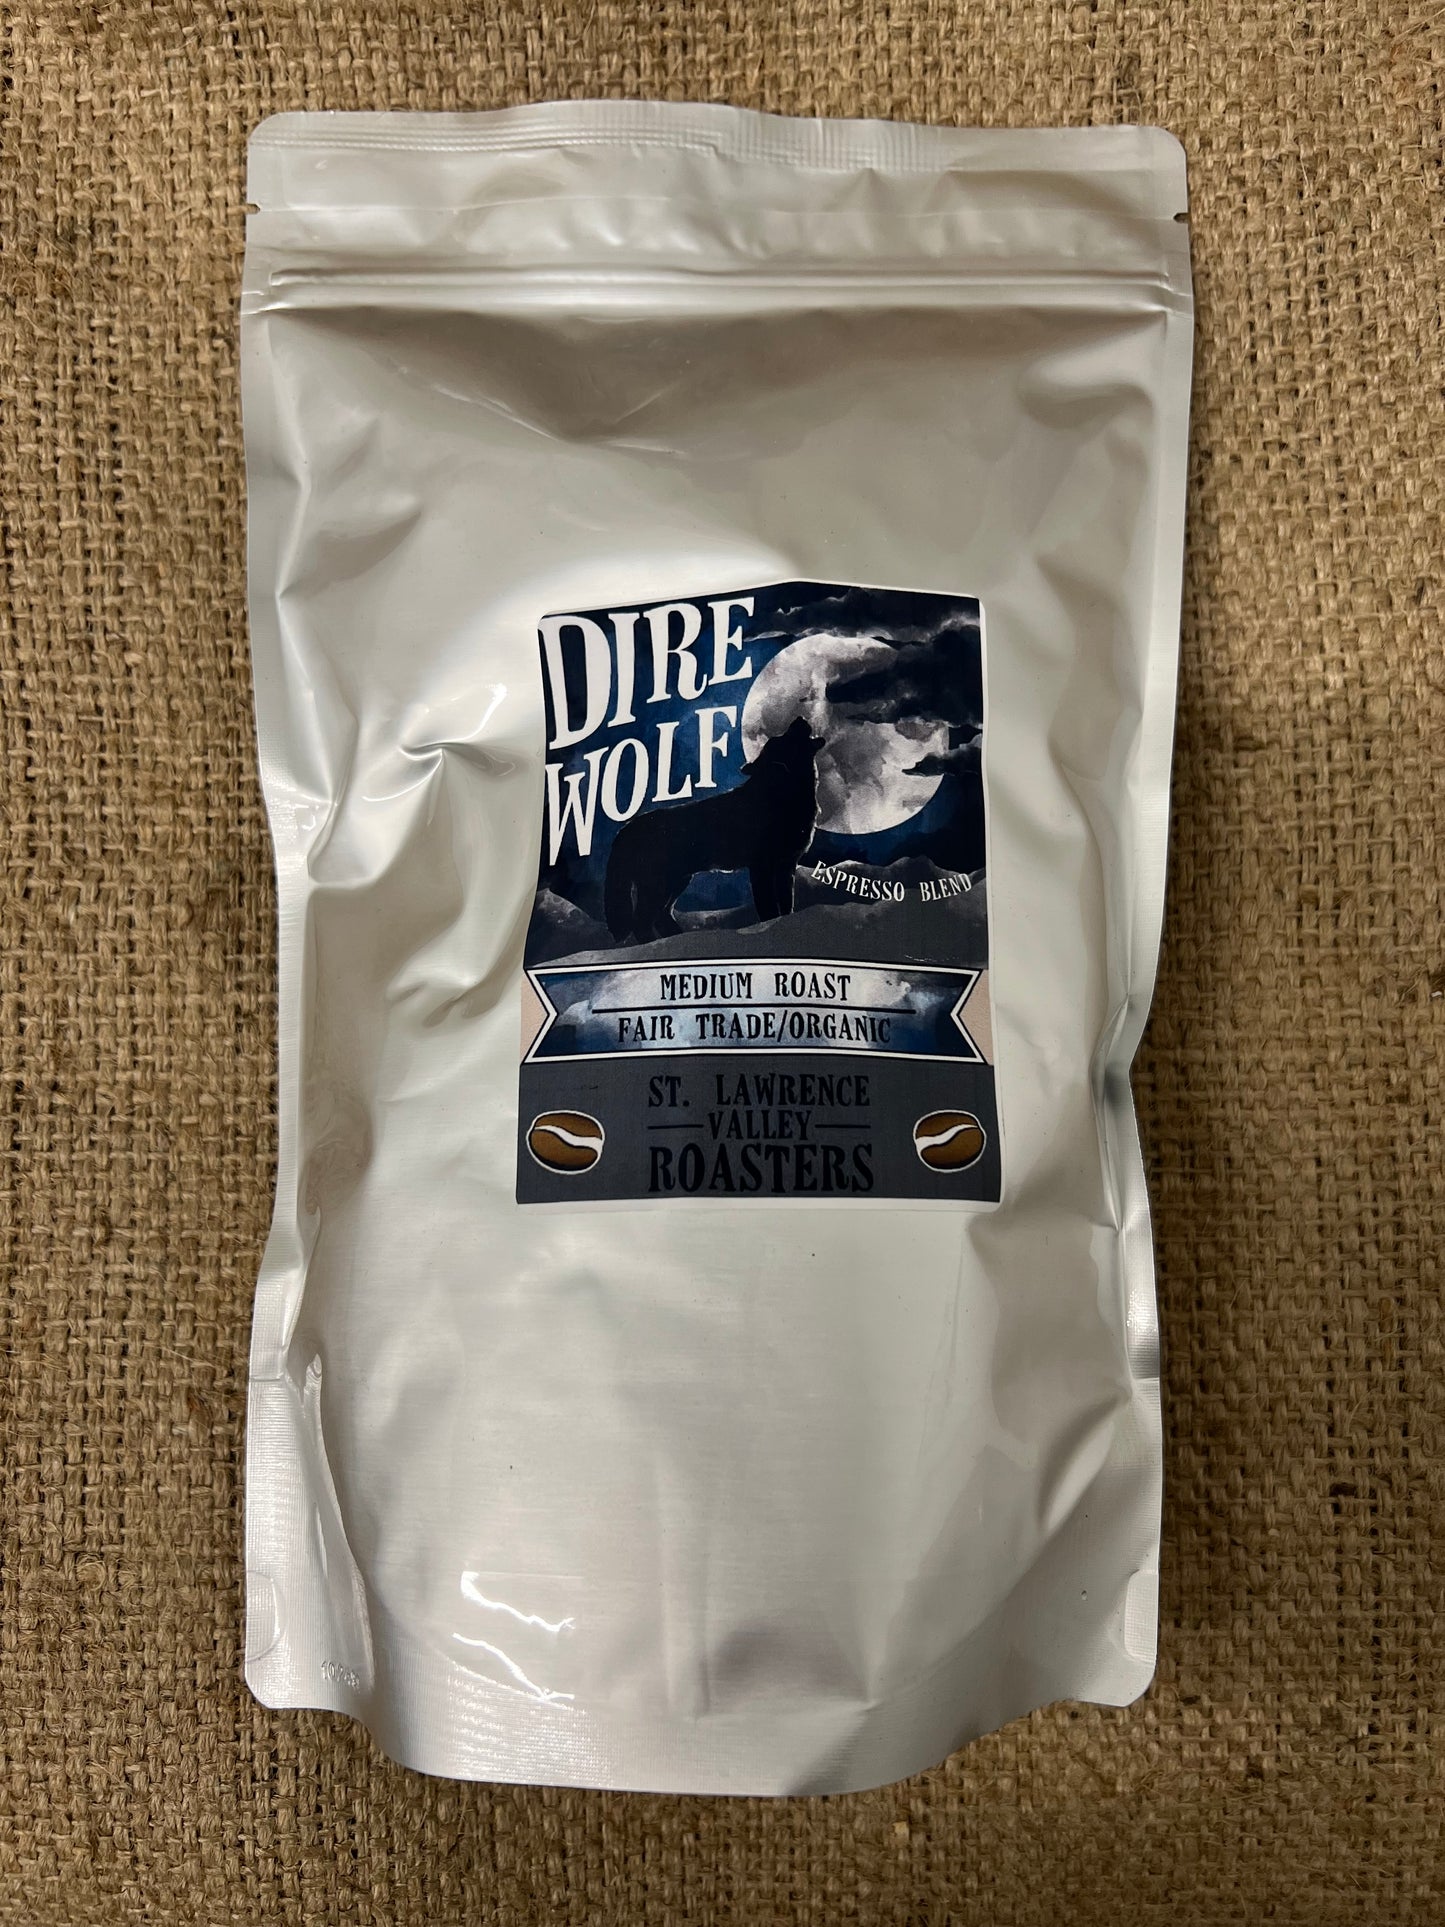 Dire Wolf Espresso Blend